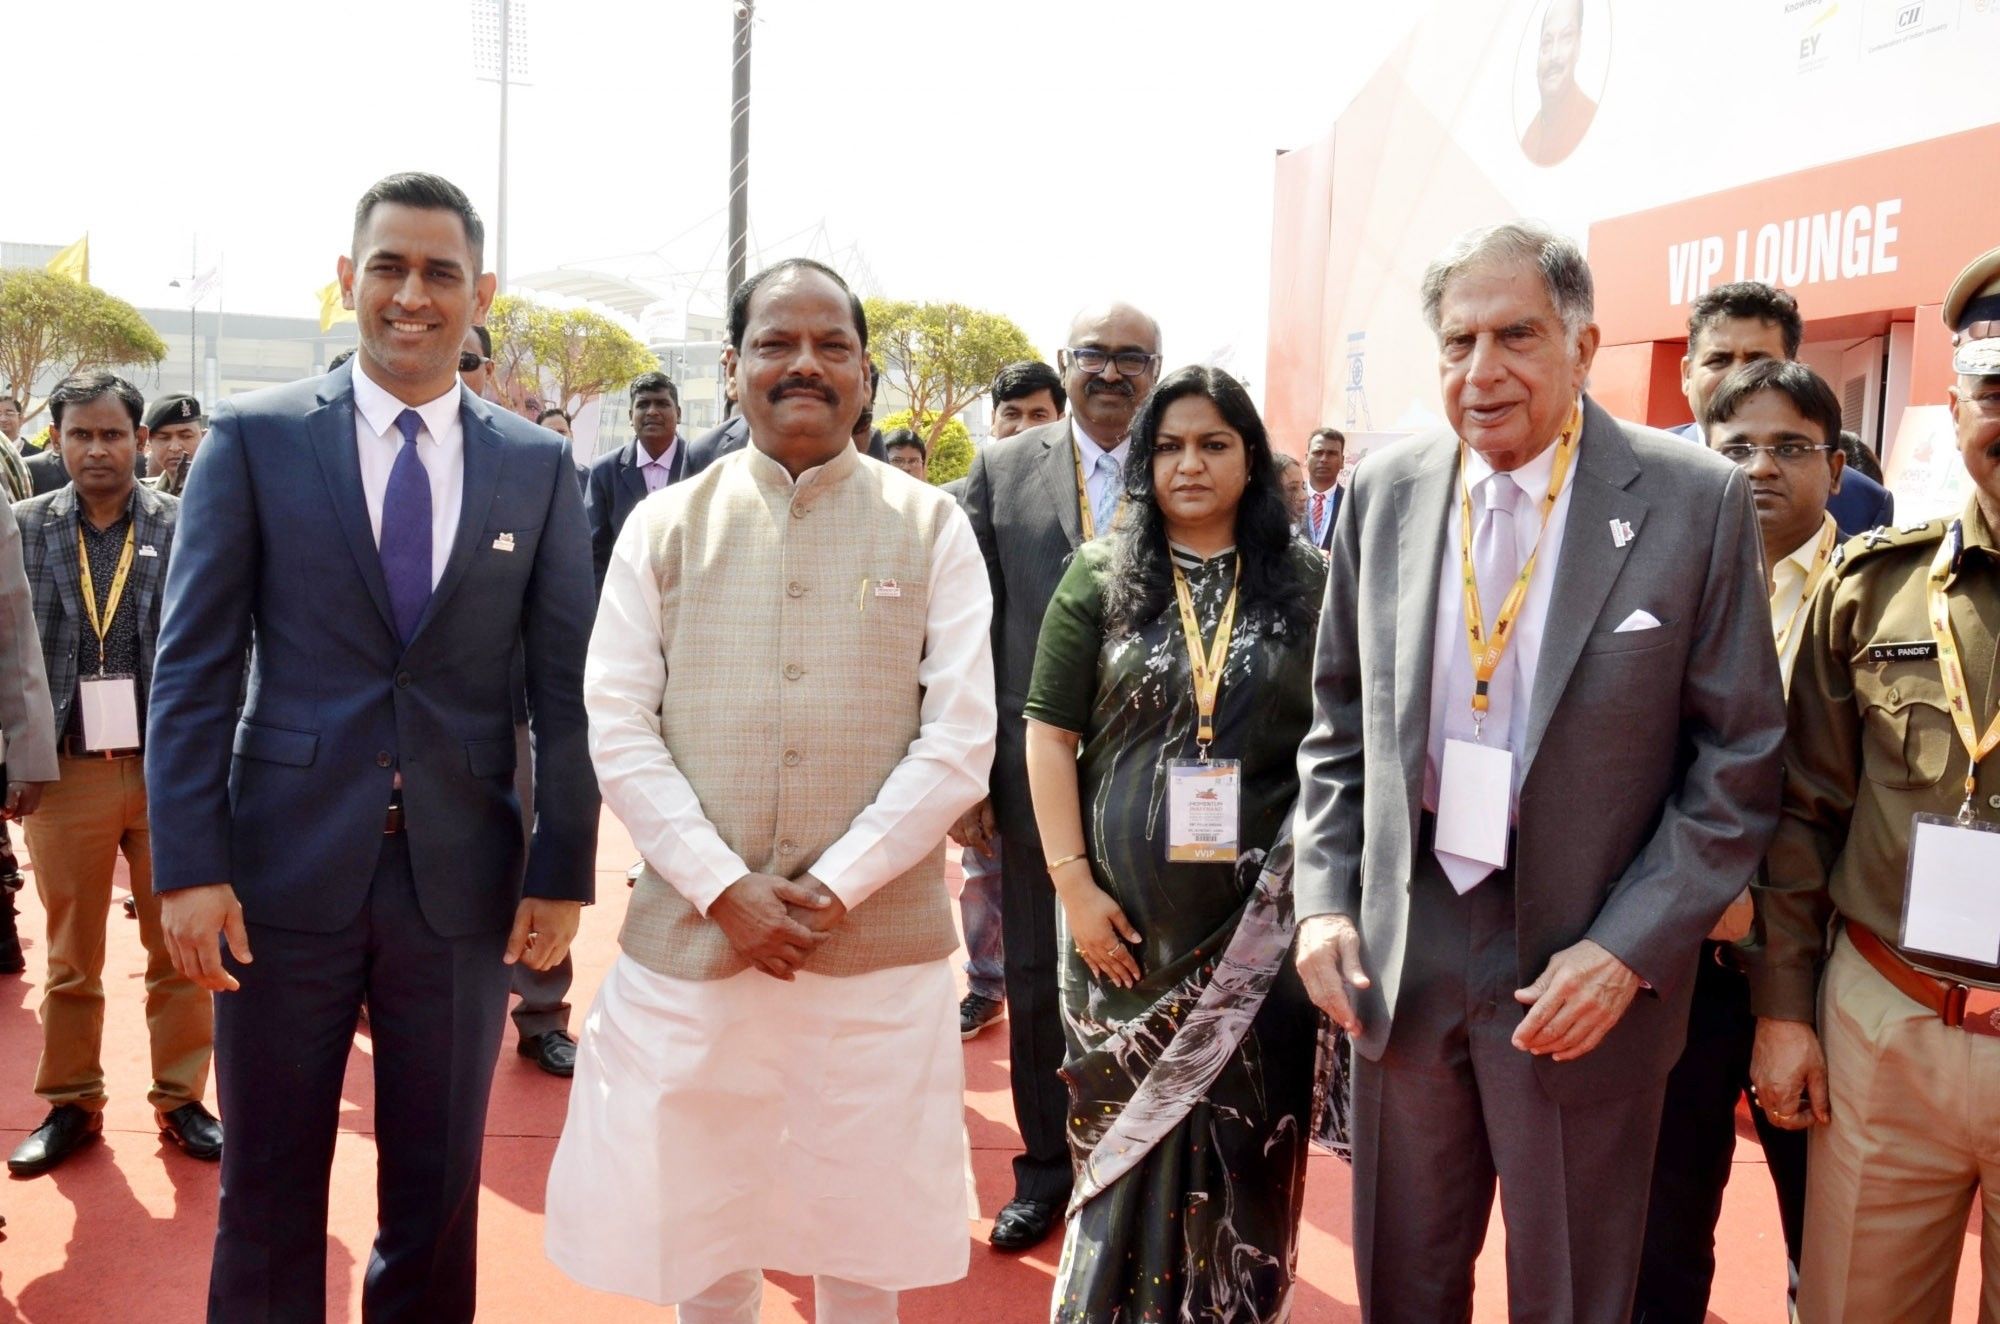 झारखंड वैश्विक निवेशक सम्मेलन 2017 में कई बड़े उद्योगपतियों ने हजारों करोड़ रुपए के निवेश का मुख्यमंत्री रघुबर दास से किया वादा 